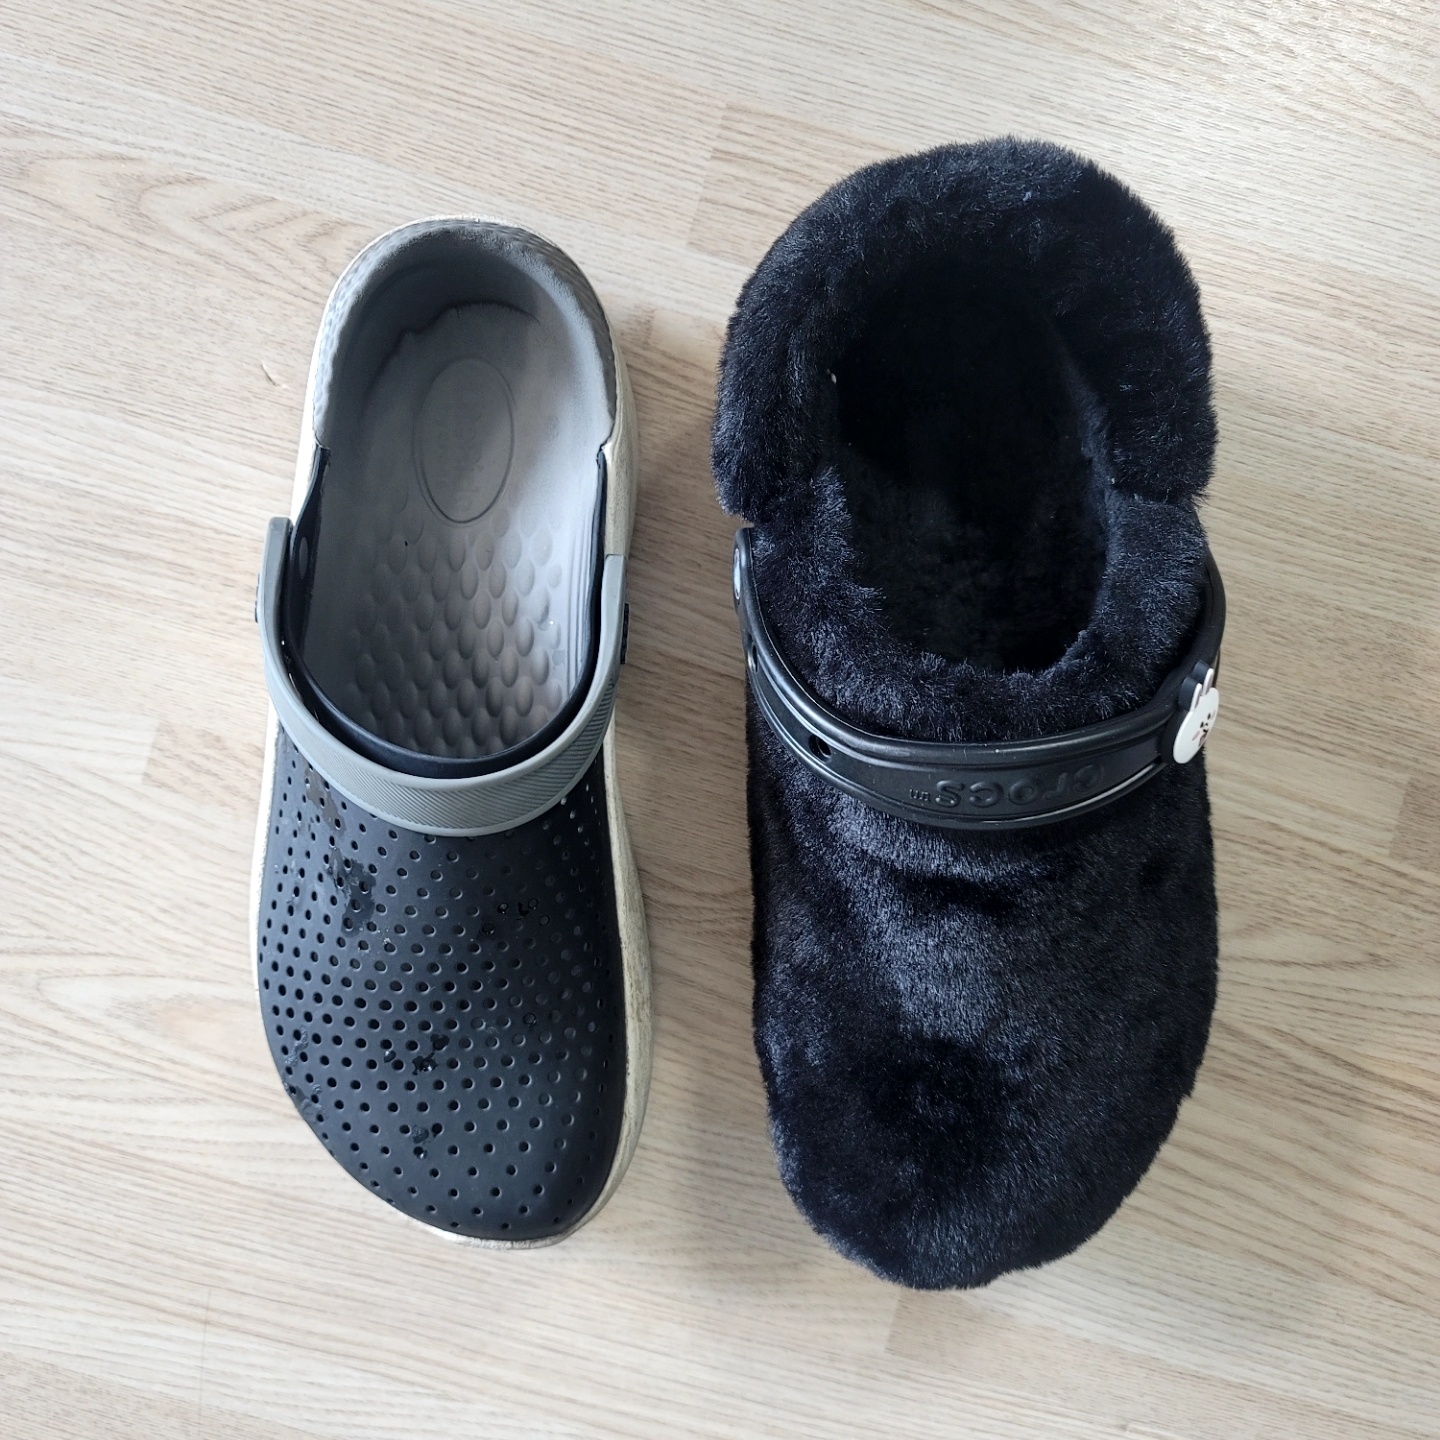 크록스 여름 신발과 겨울 털신발 비교